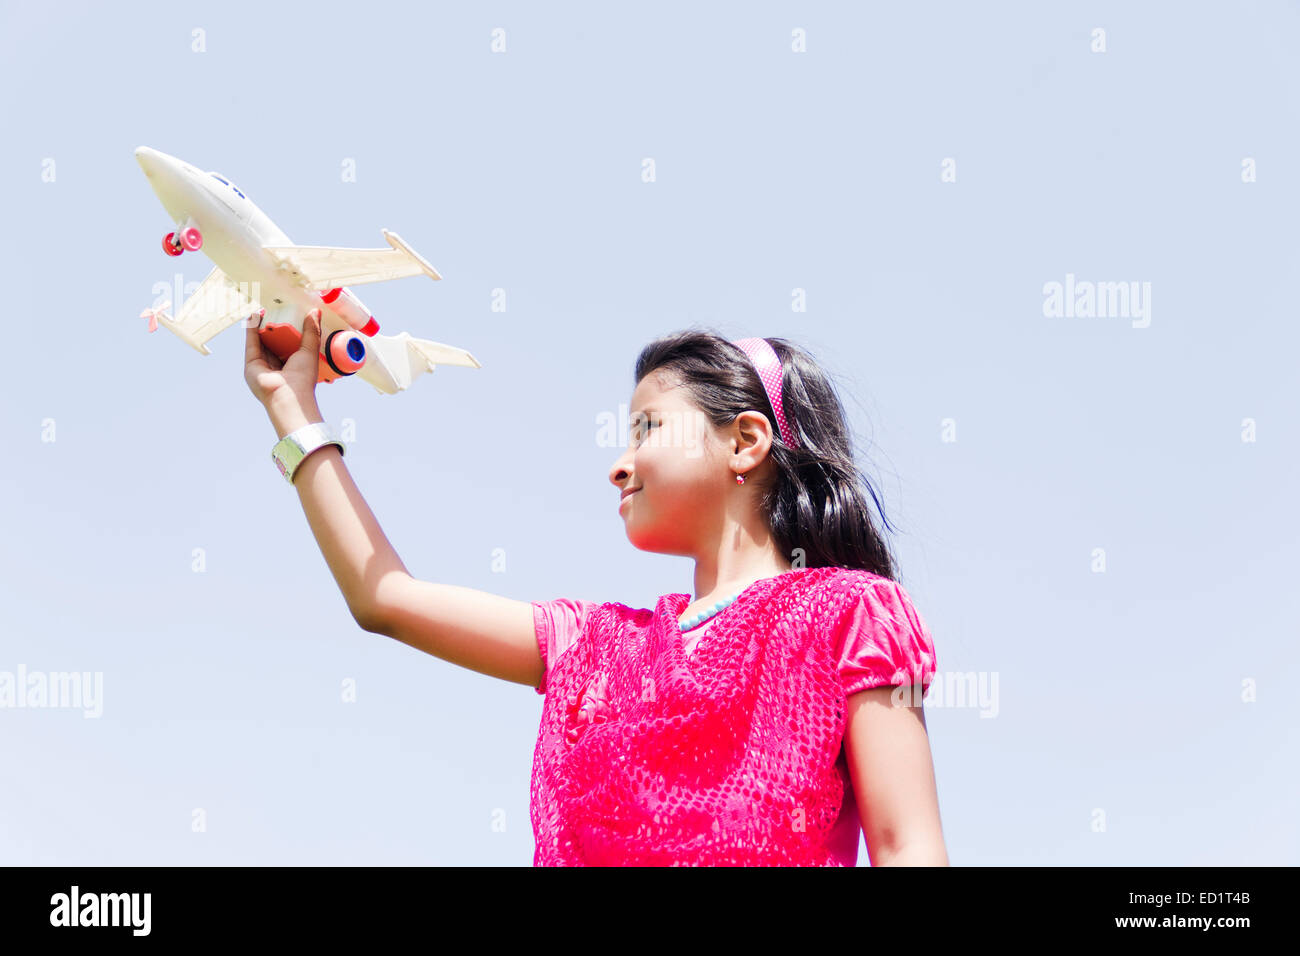 1 indiani molto bello bambino ragazza park giocando aeroplano giocattolo Foto Stock